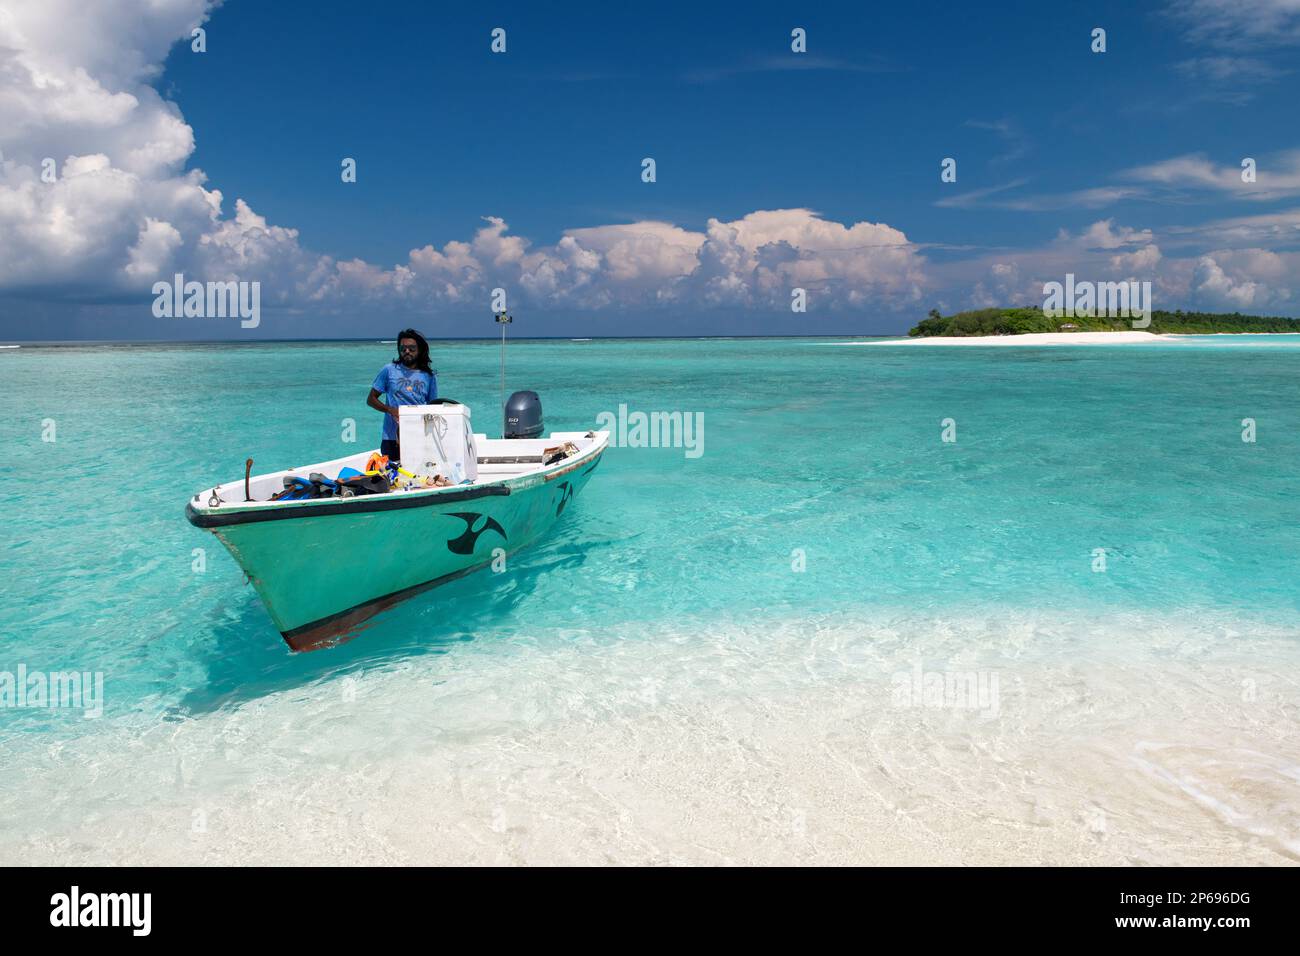 Bootsausflug zu einer Sandbank in der Nähe der Insel Fehendhoo, Malediven Stockfoto